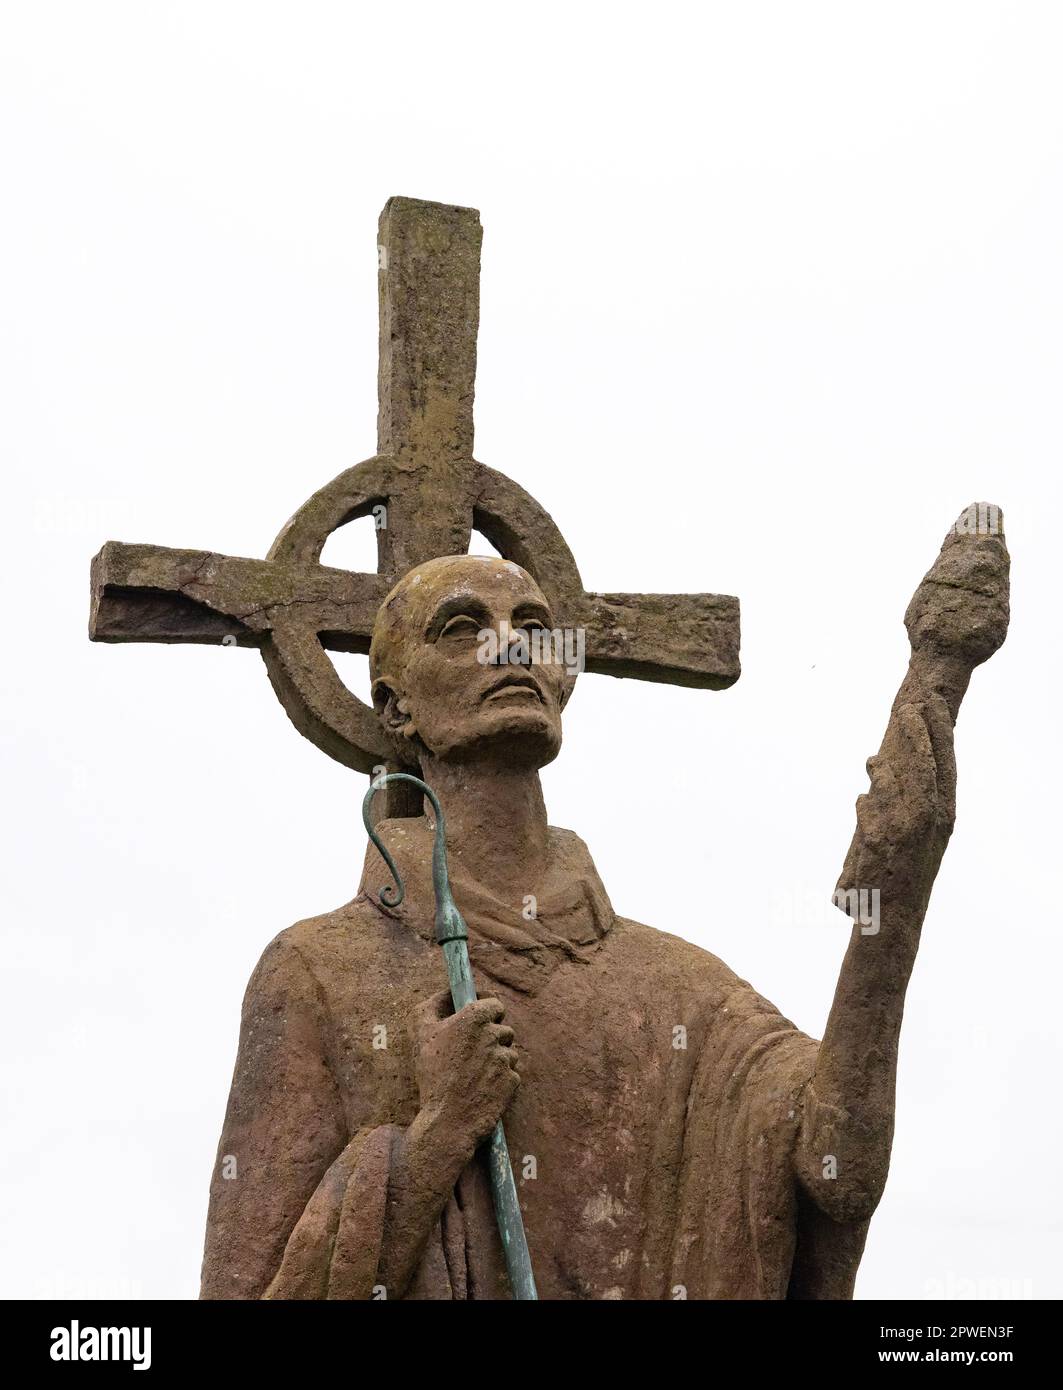 Details der modernen Statue von St. Aidan, Gründer von Lindisfarne Priory, im Friedhof der St. Marys Kirche, Lindisfarne Holy Island Northumberland UK Stockfoto